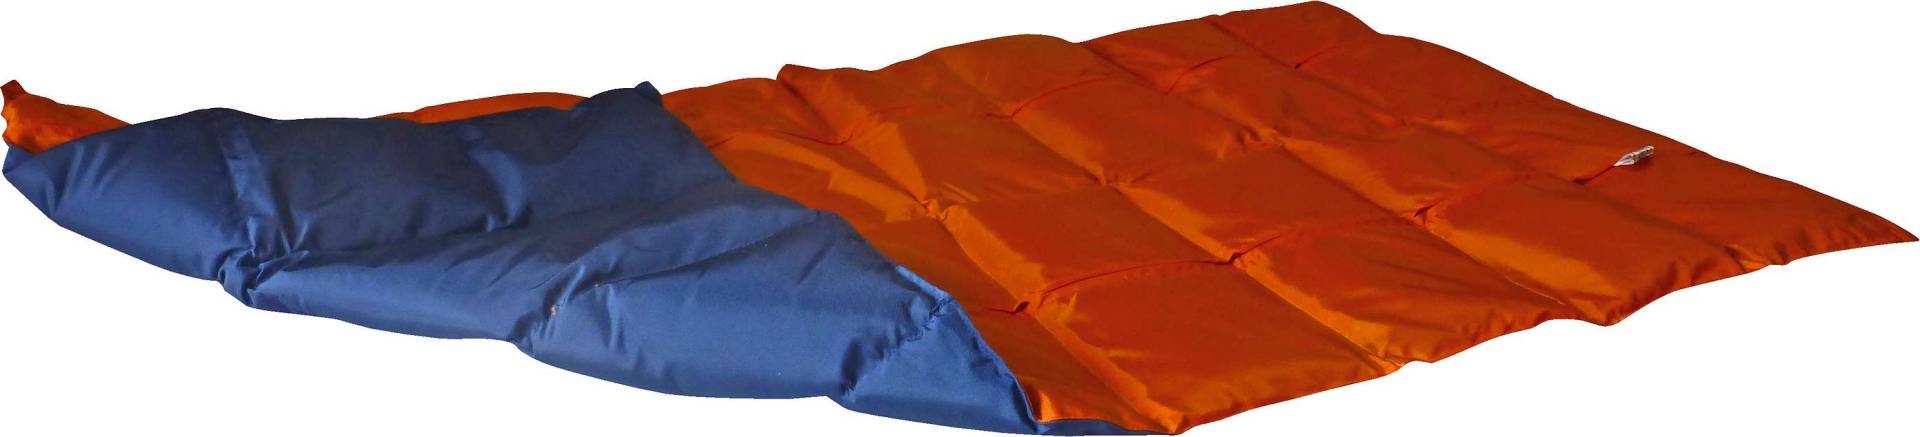 Enste Physioform Reha Gewichtsdecke, 144x72 cm, Orange-Dunkelblau, Außenhülle Suratec von Enste Physioform Reha